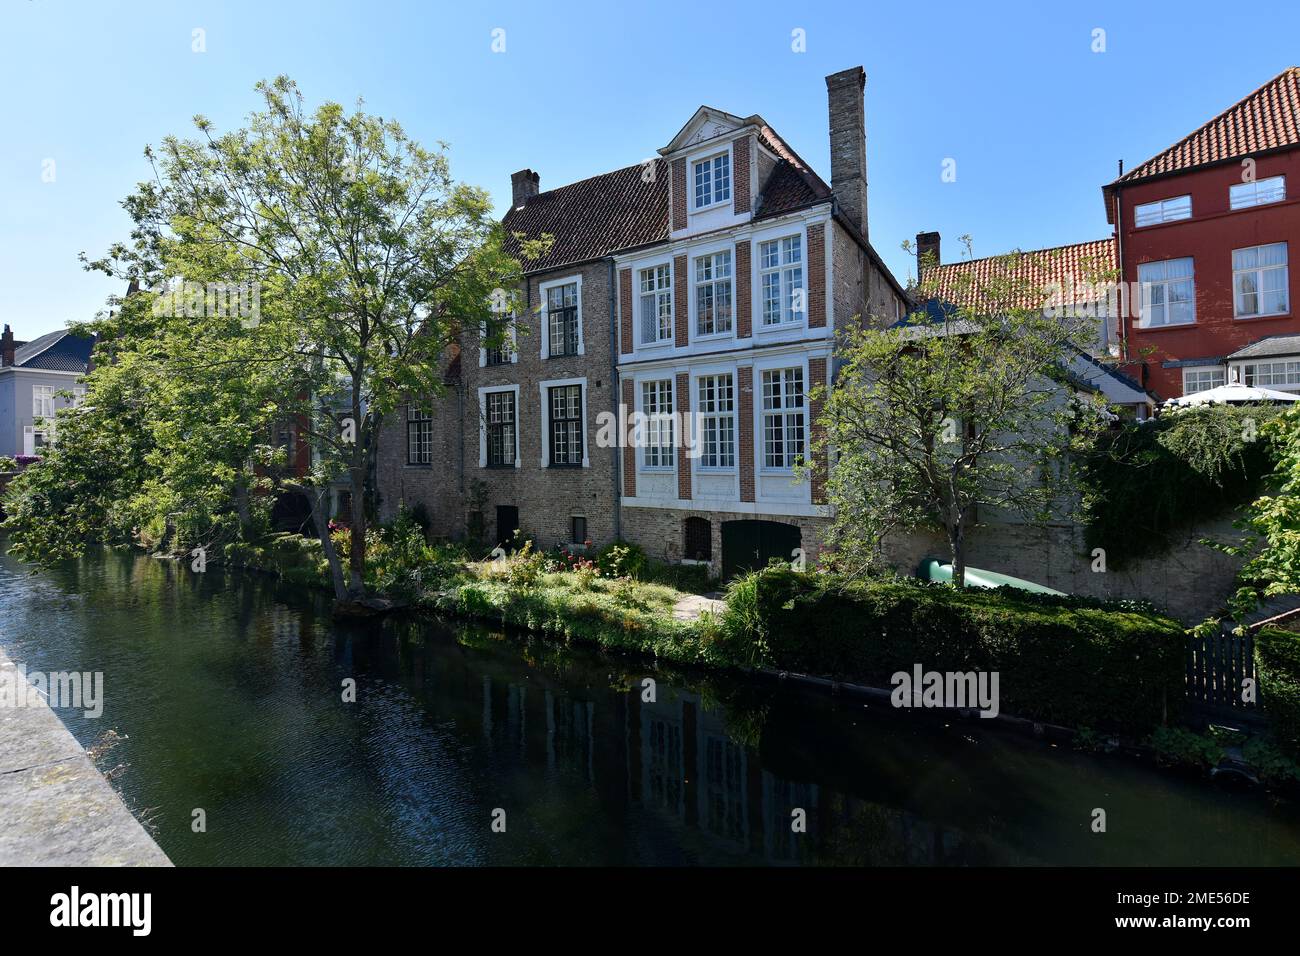 Belgique, Flandre Occidentale, Bruges, vue sur les maisons au bord de la rivière en été Banque D'Images